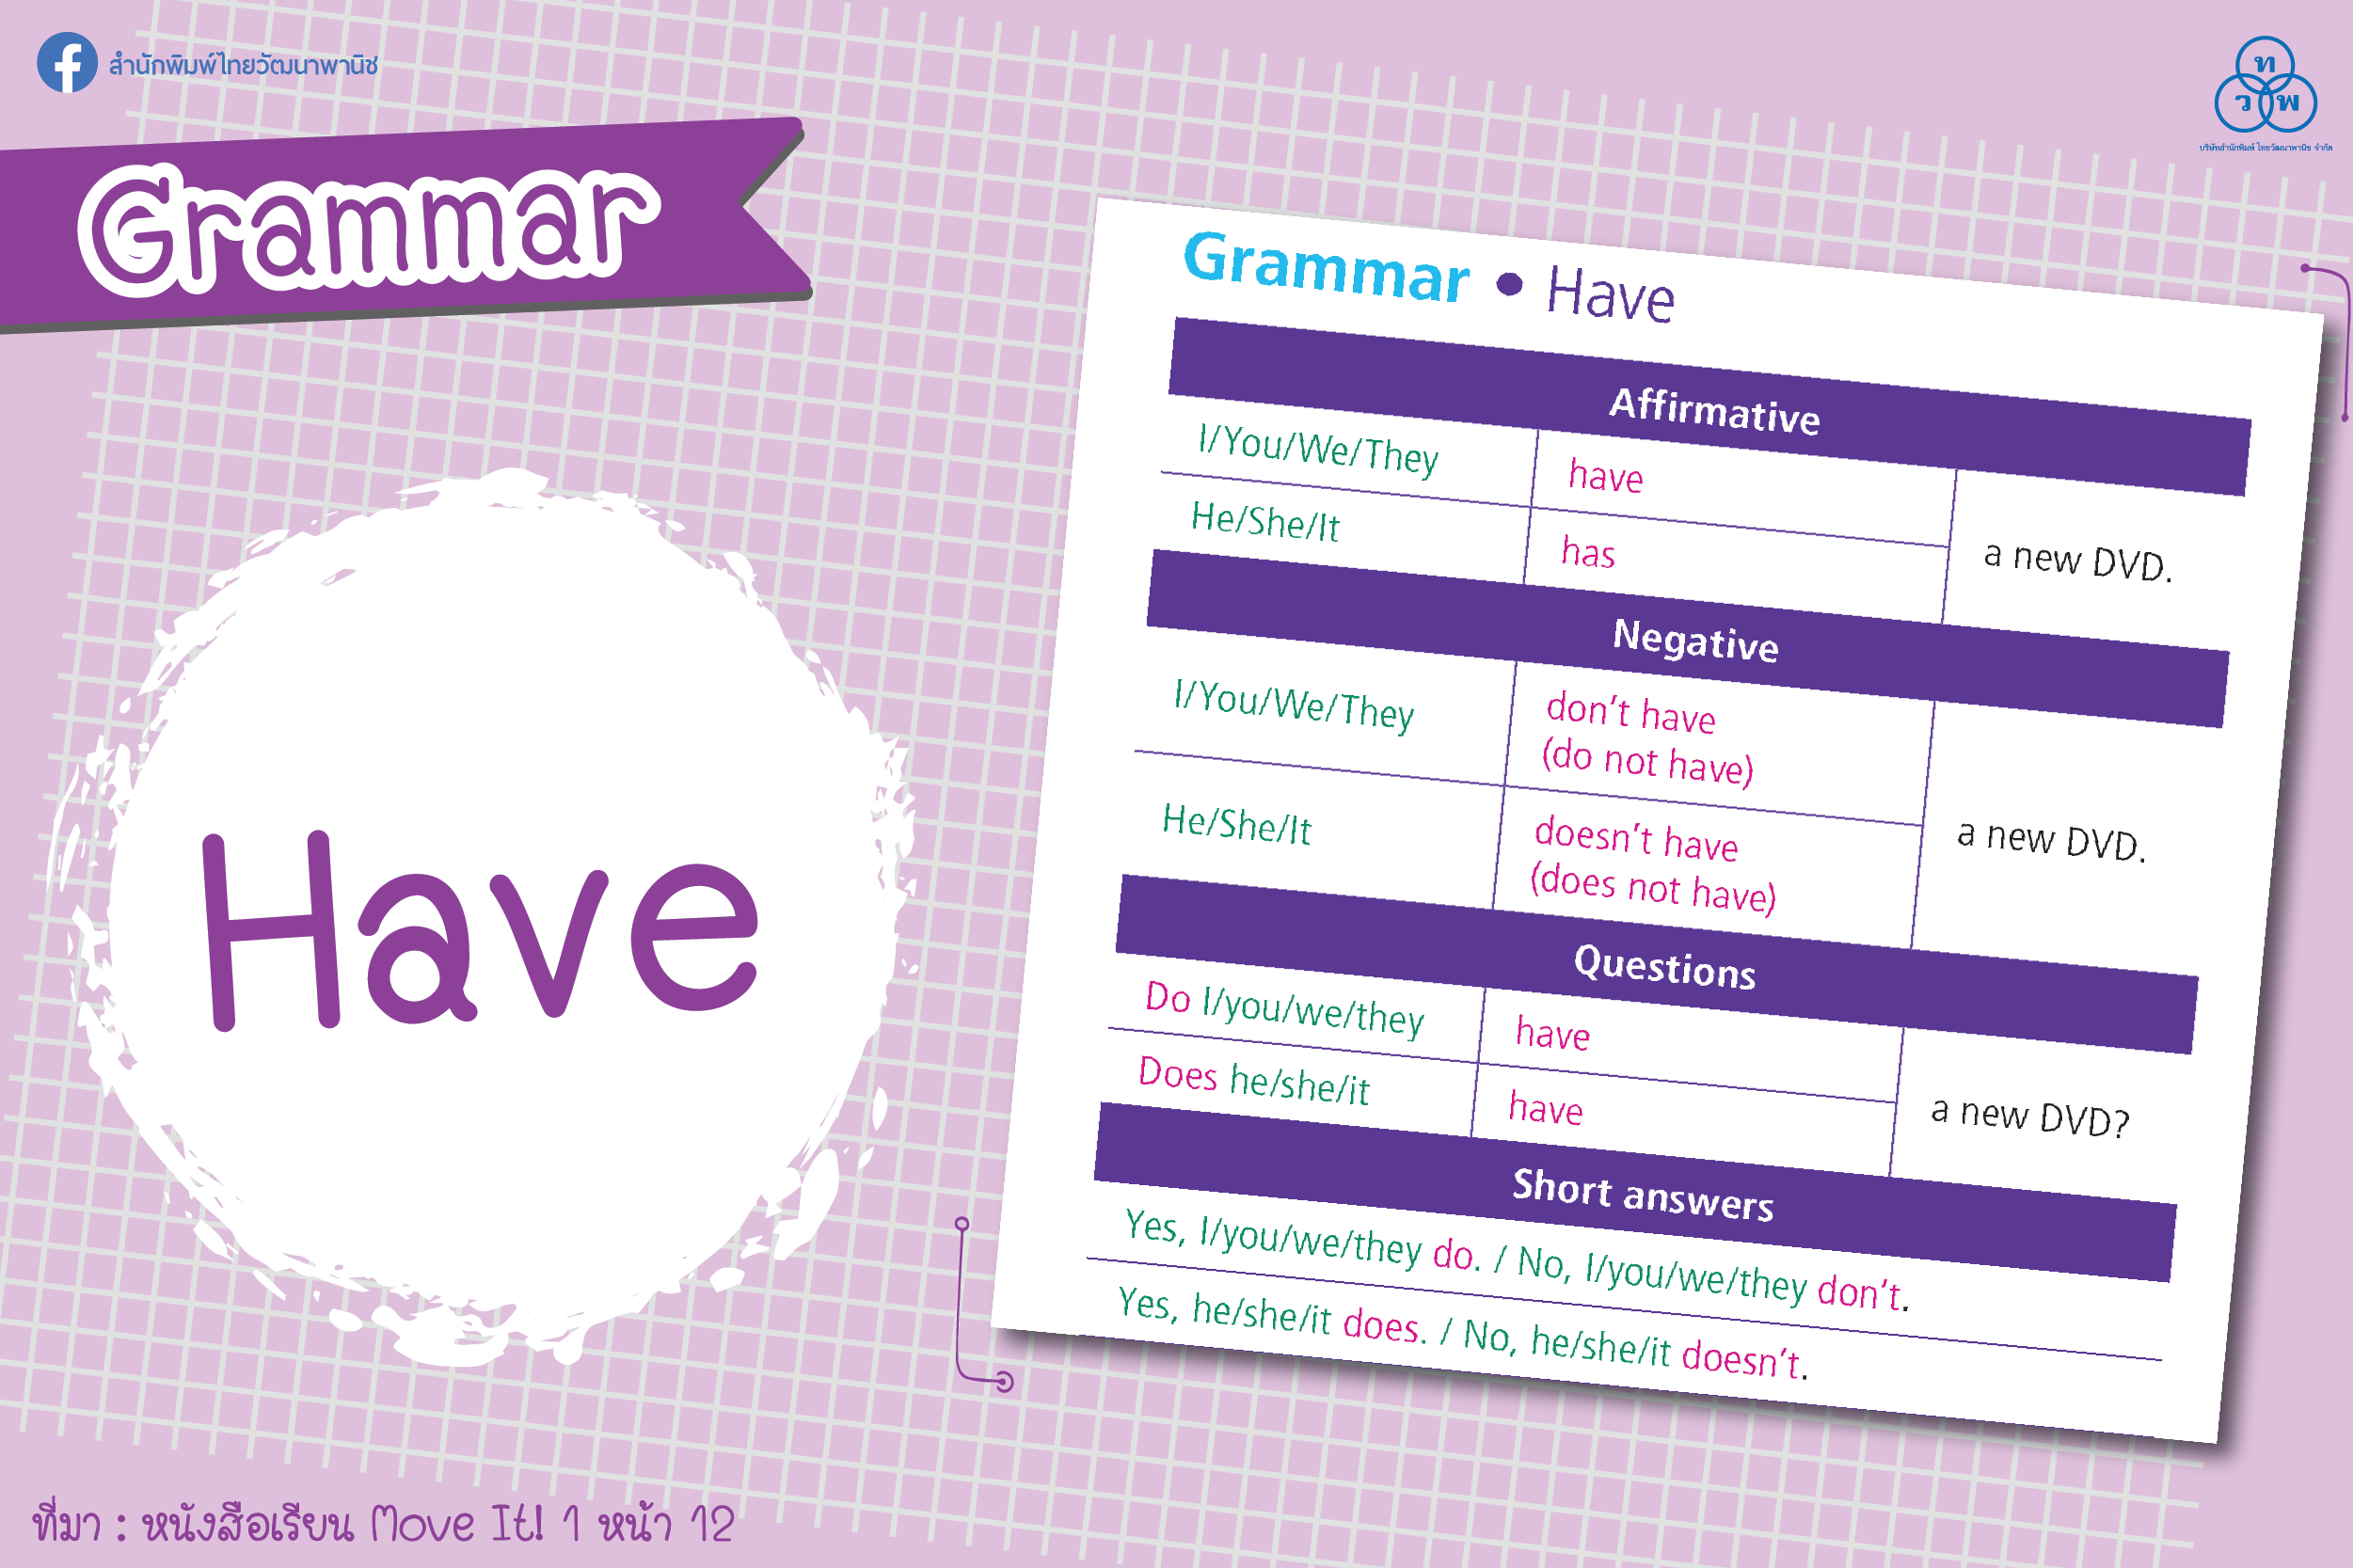 Grammar: Have